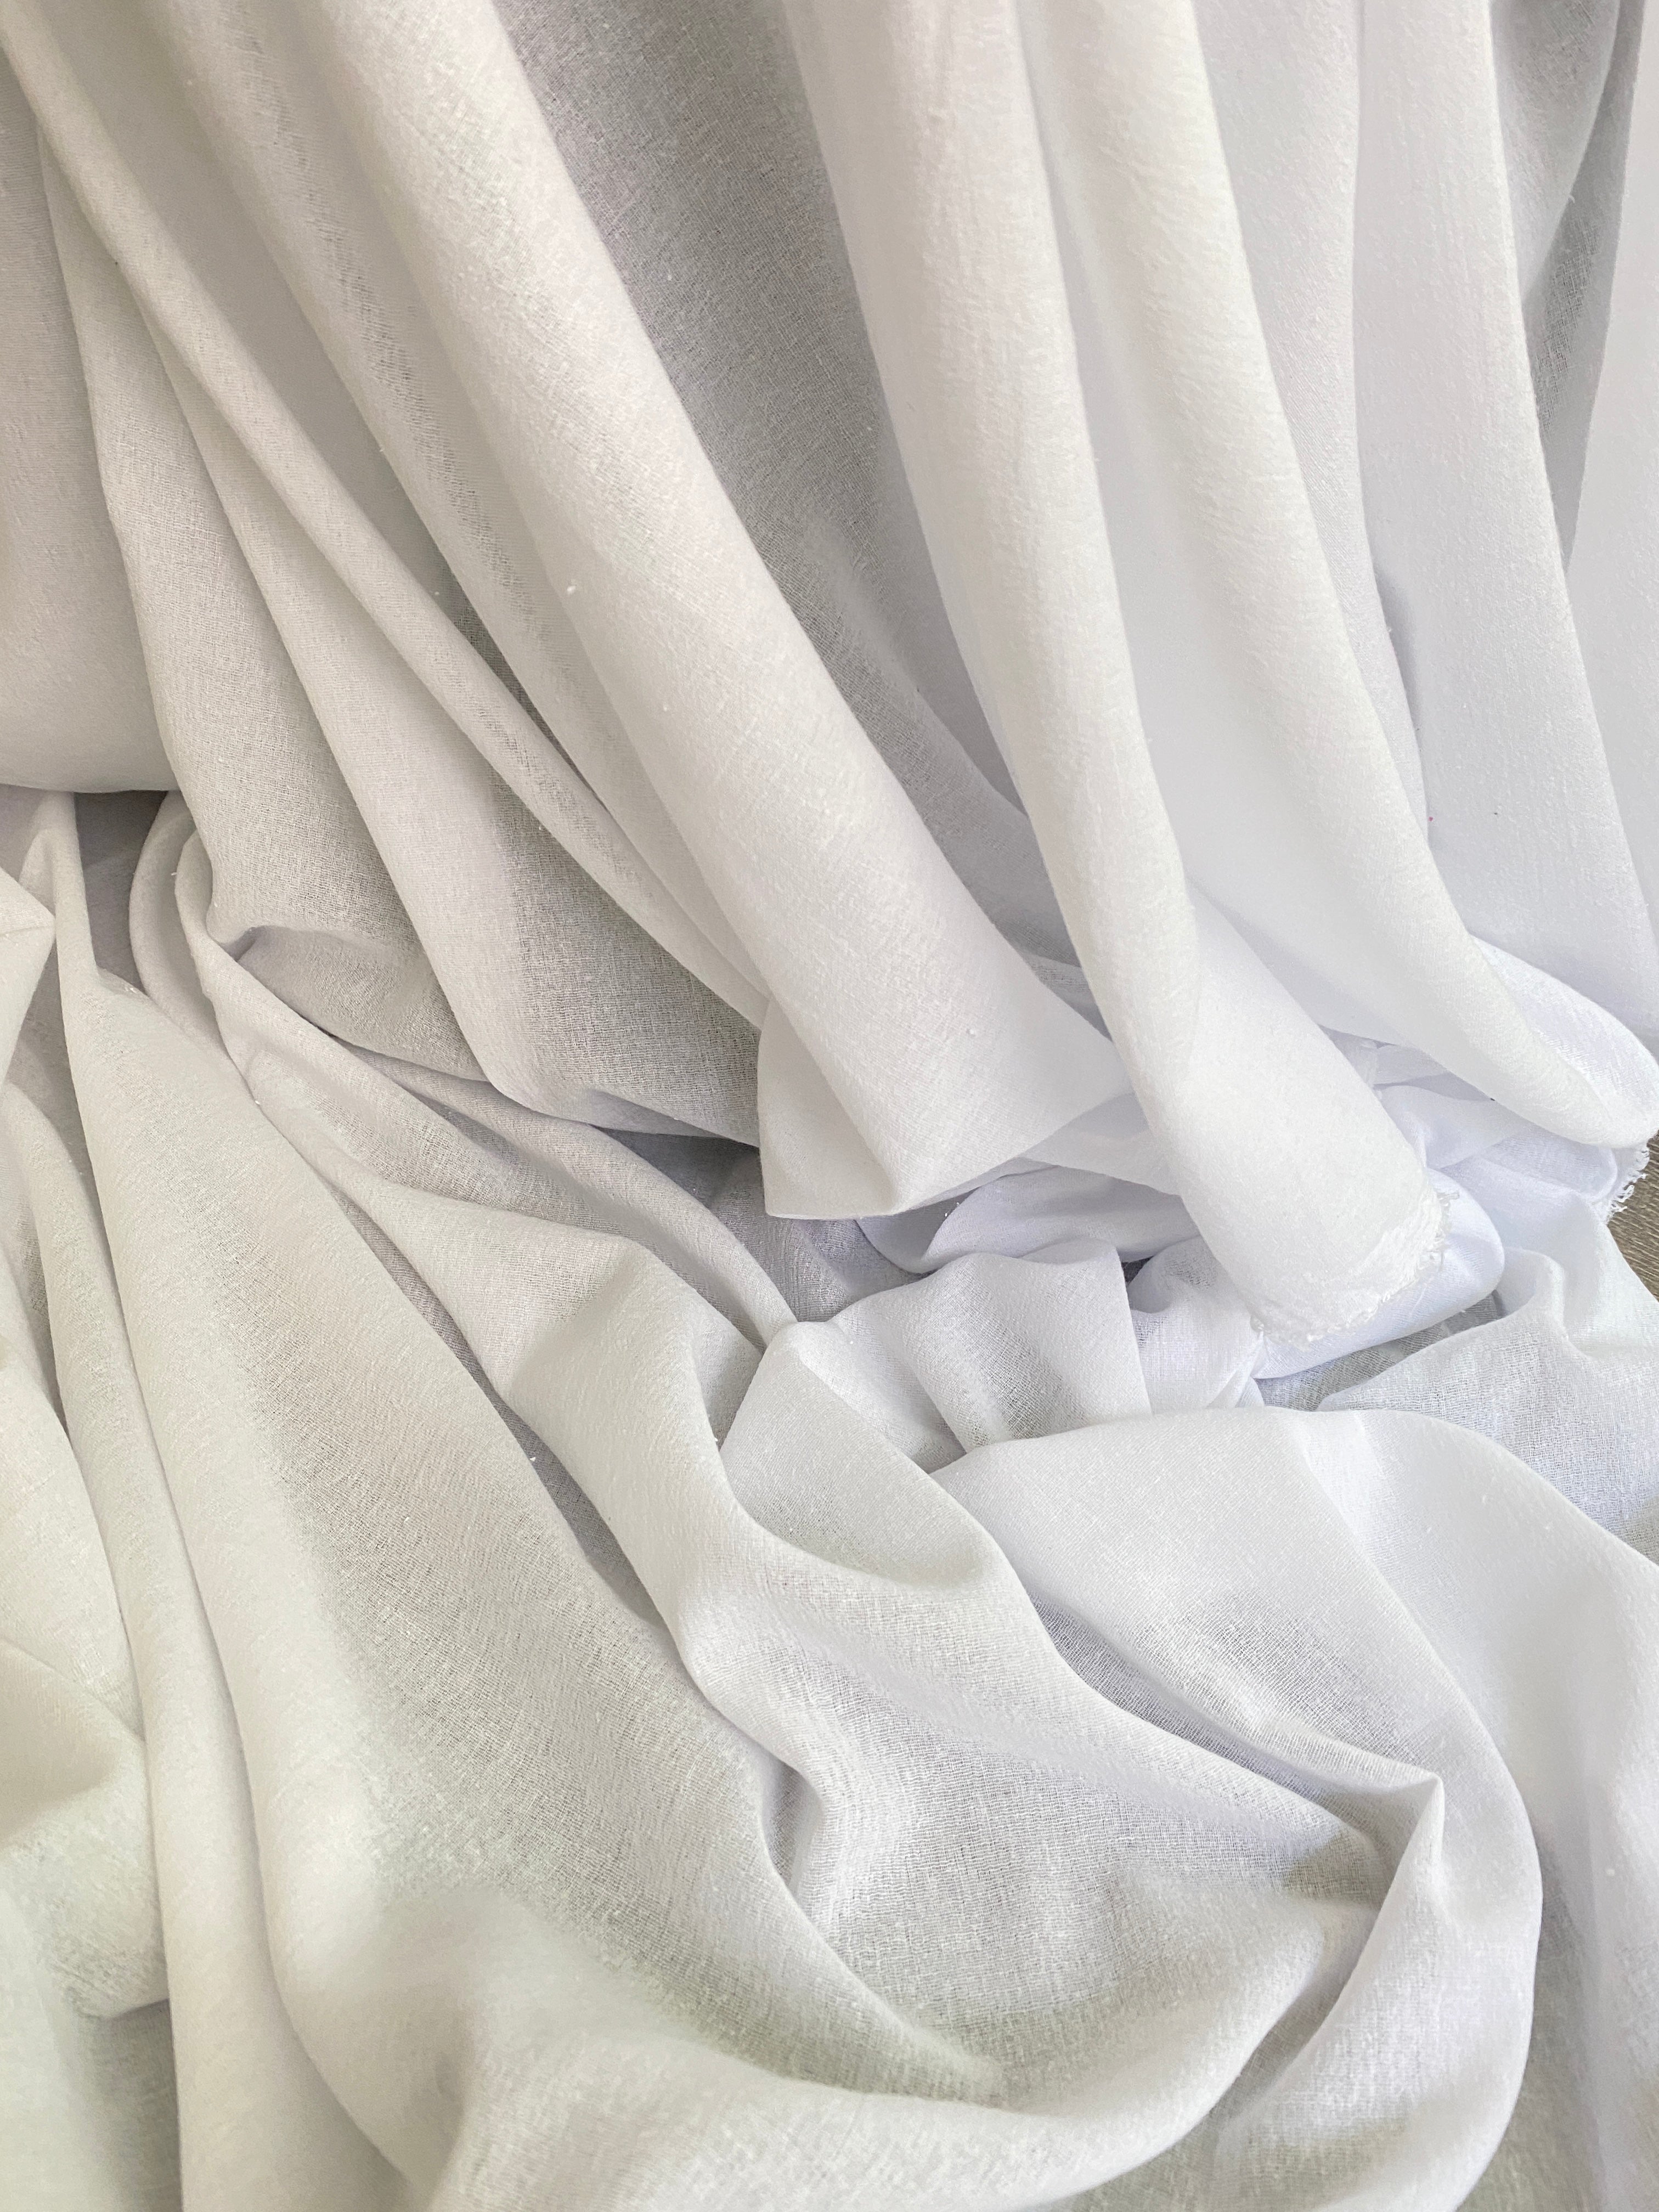  crinkle cotton gauze, white cotton gauze, white crinkle muslin fabric, double gauze fabric white, muslin fabric